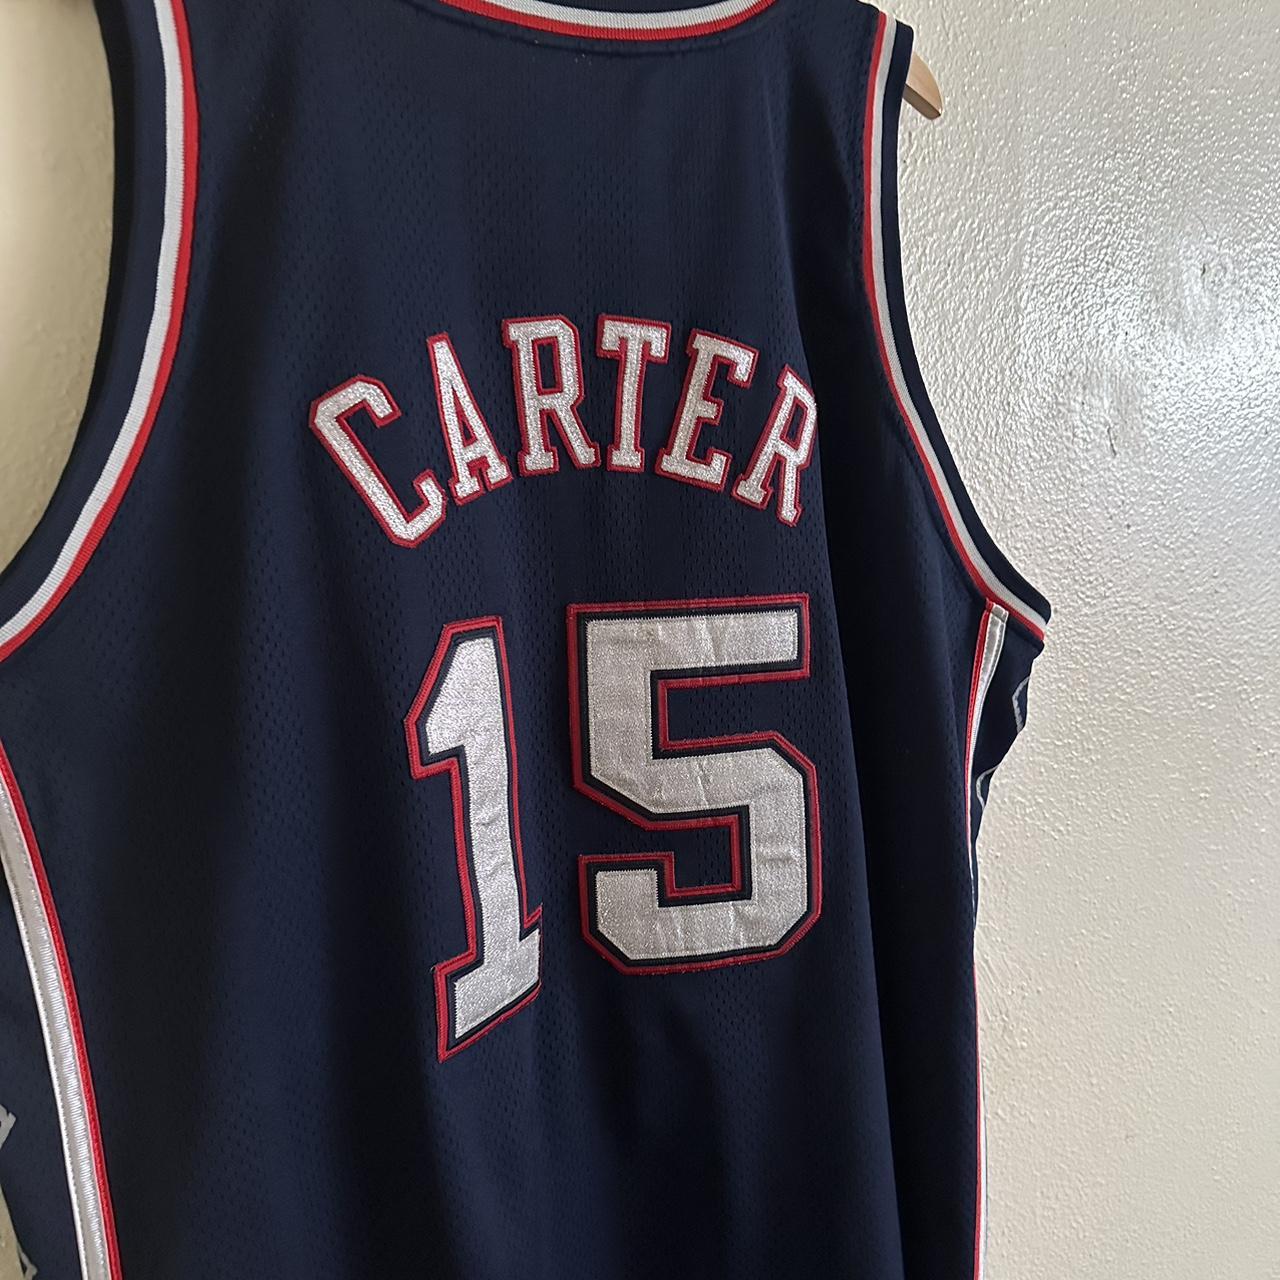 Vince Carter #15 New Jersey basketball jersey Great - Depop